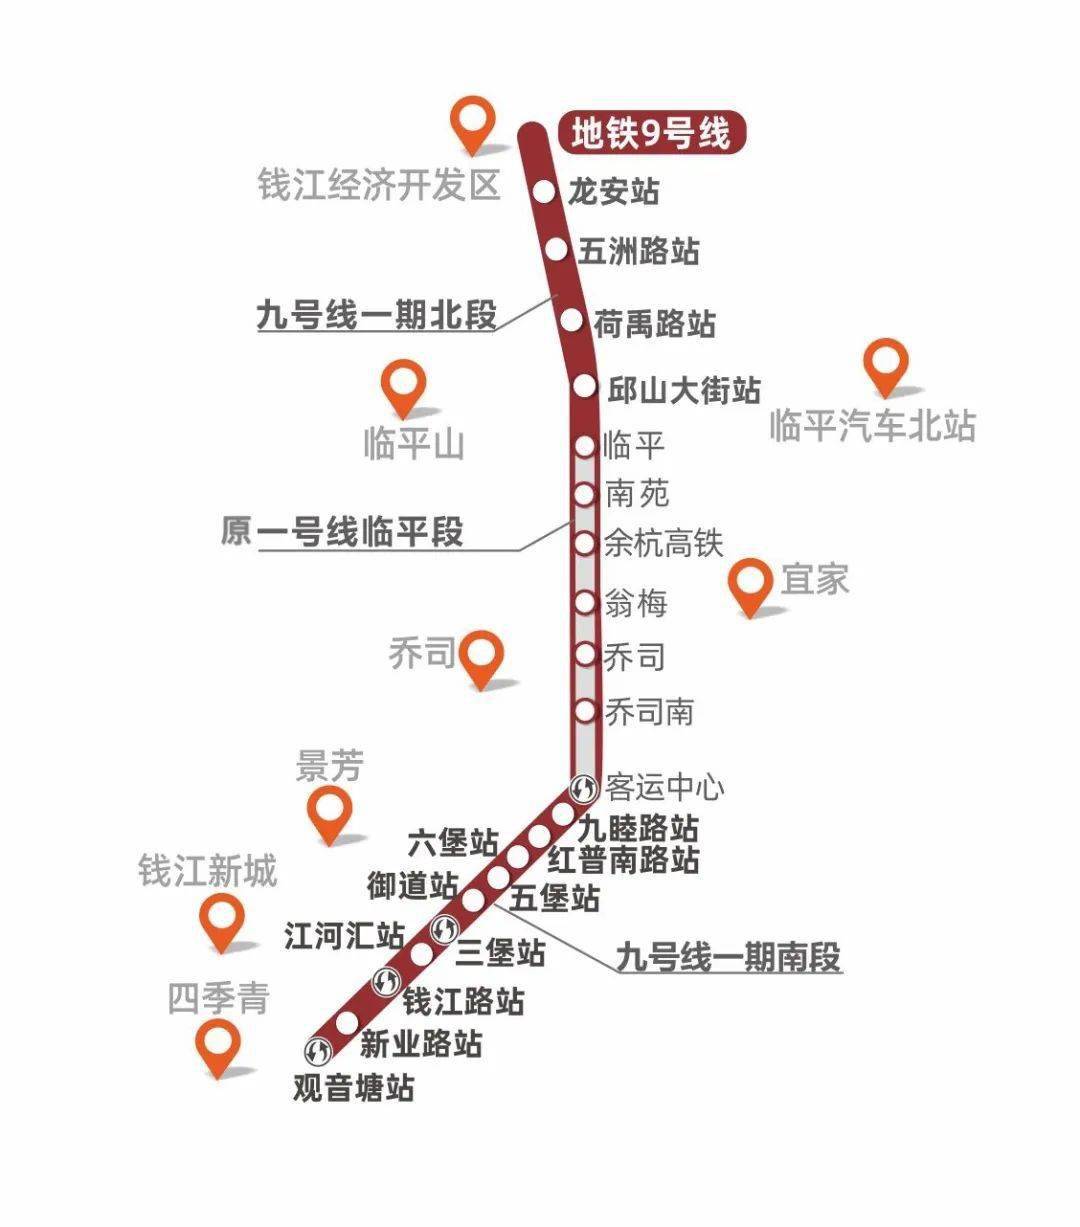 【消息】杭州地铁9号线开通!将与多条地铁线路换乘